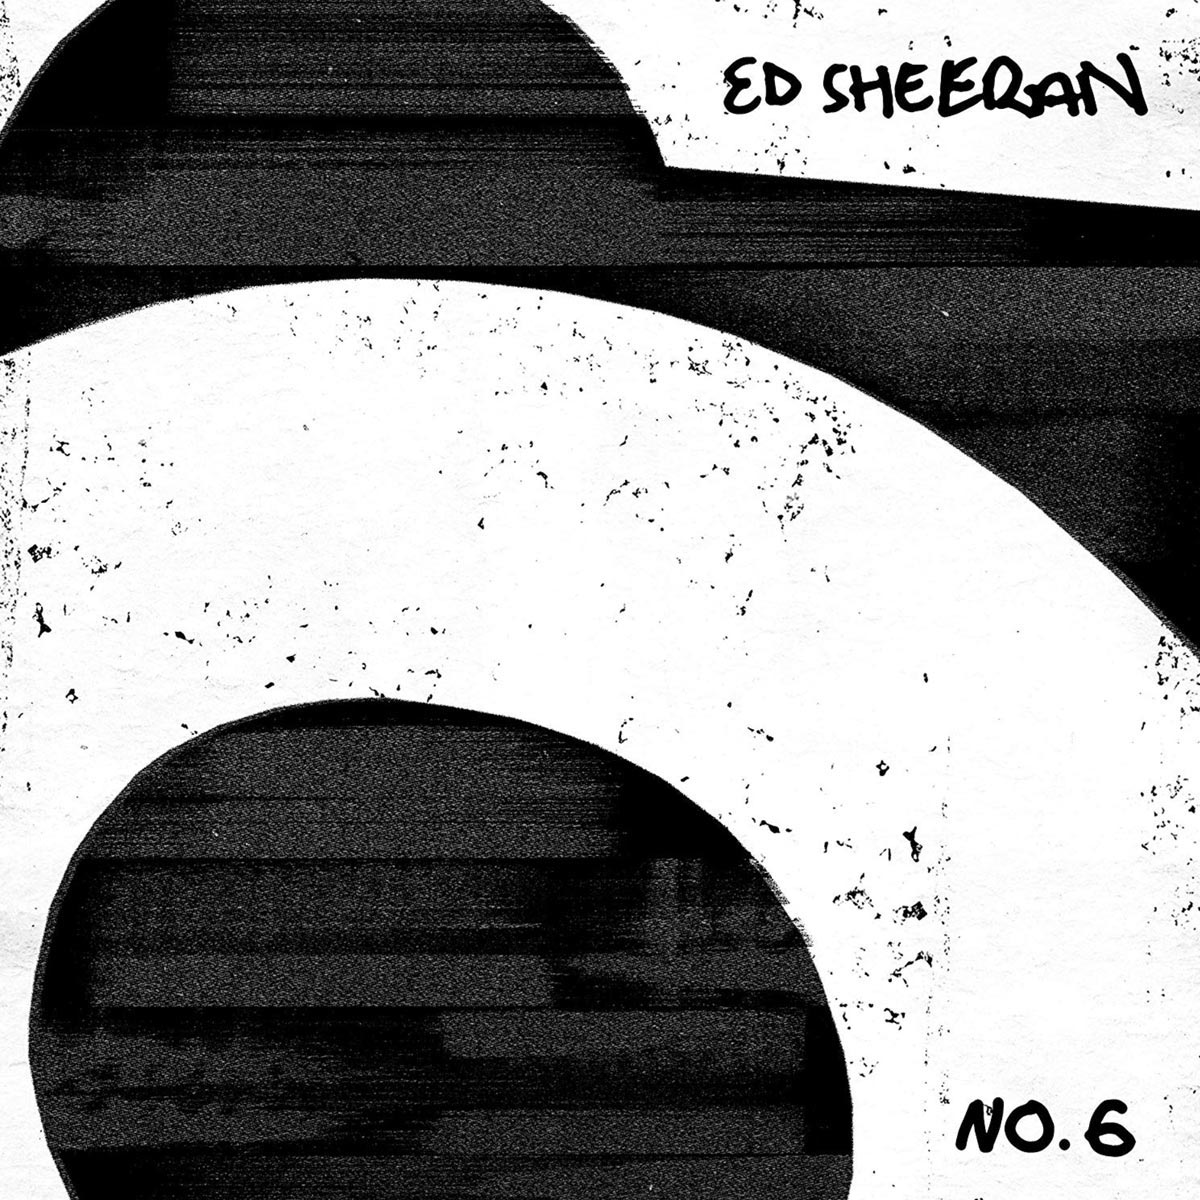 Sheeran Ed: No 6 collaborations project 2019